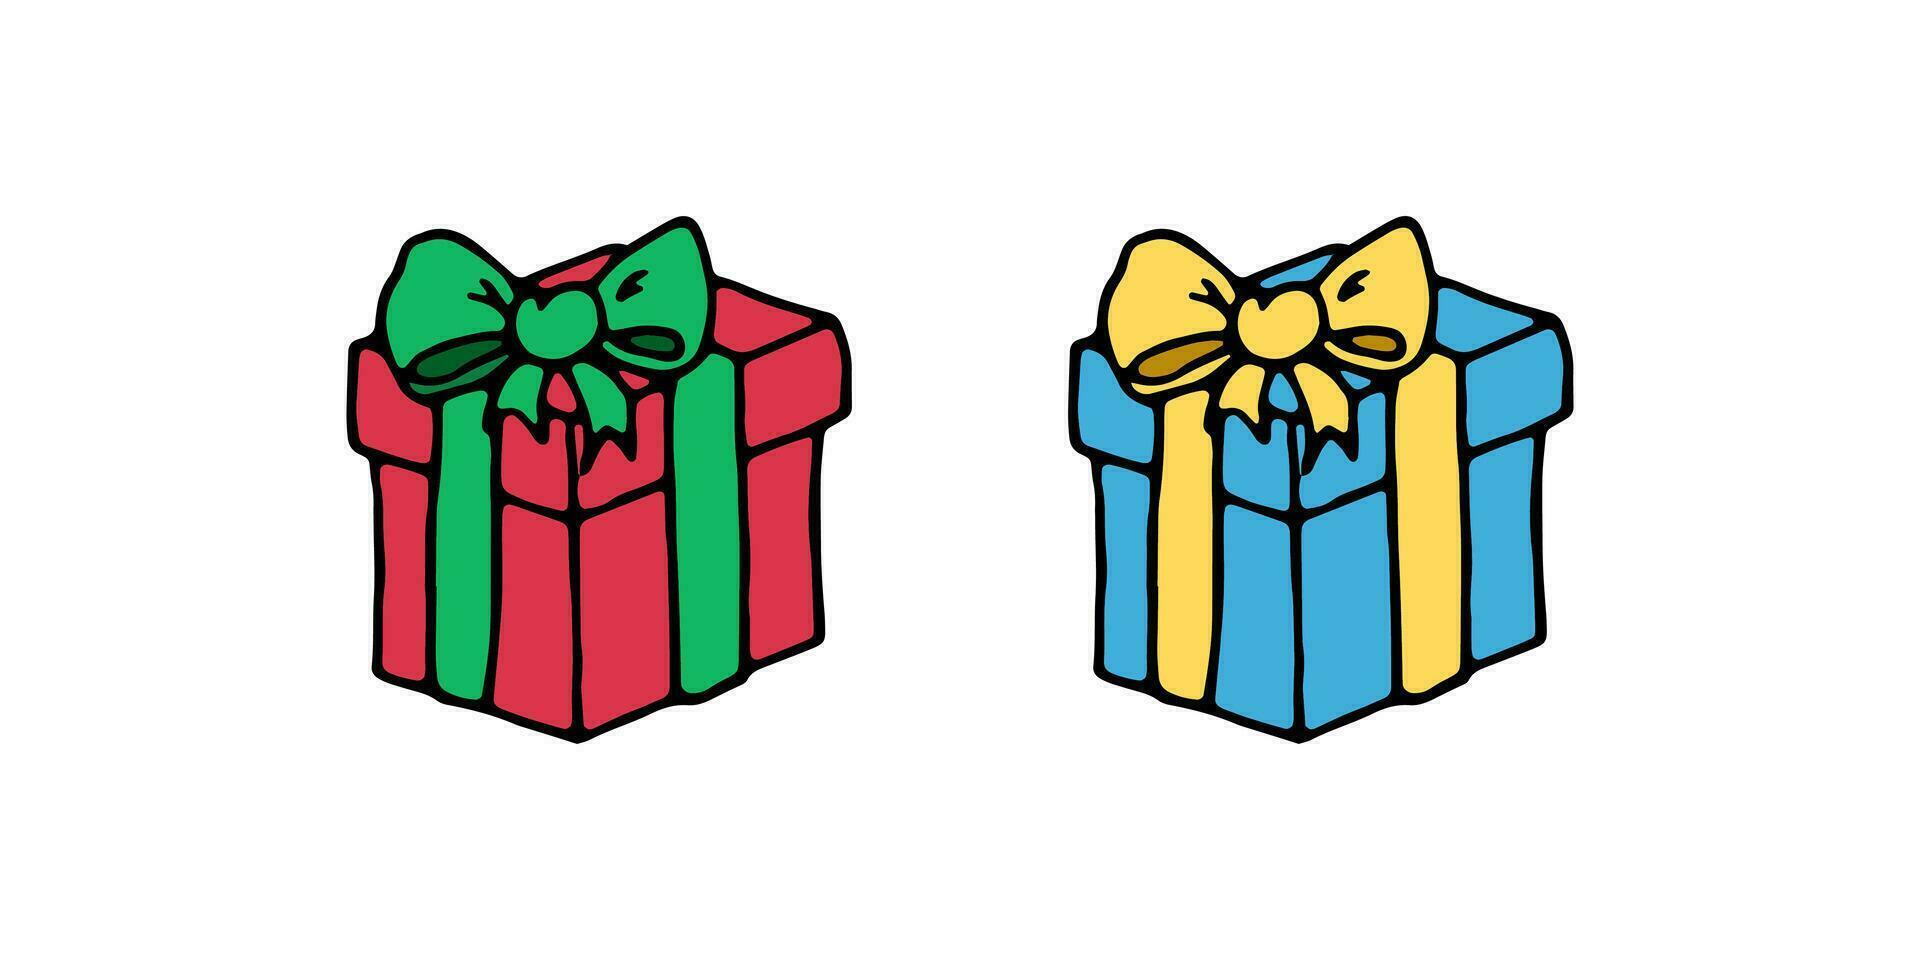 Weihnachten farbig solide Geschenk Karton Platz Kisten mit Verbeugungen. Vektor Gekritzel Karikatur Illustration zum Karten, Netz Design, Flyer, Einladungen